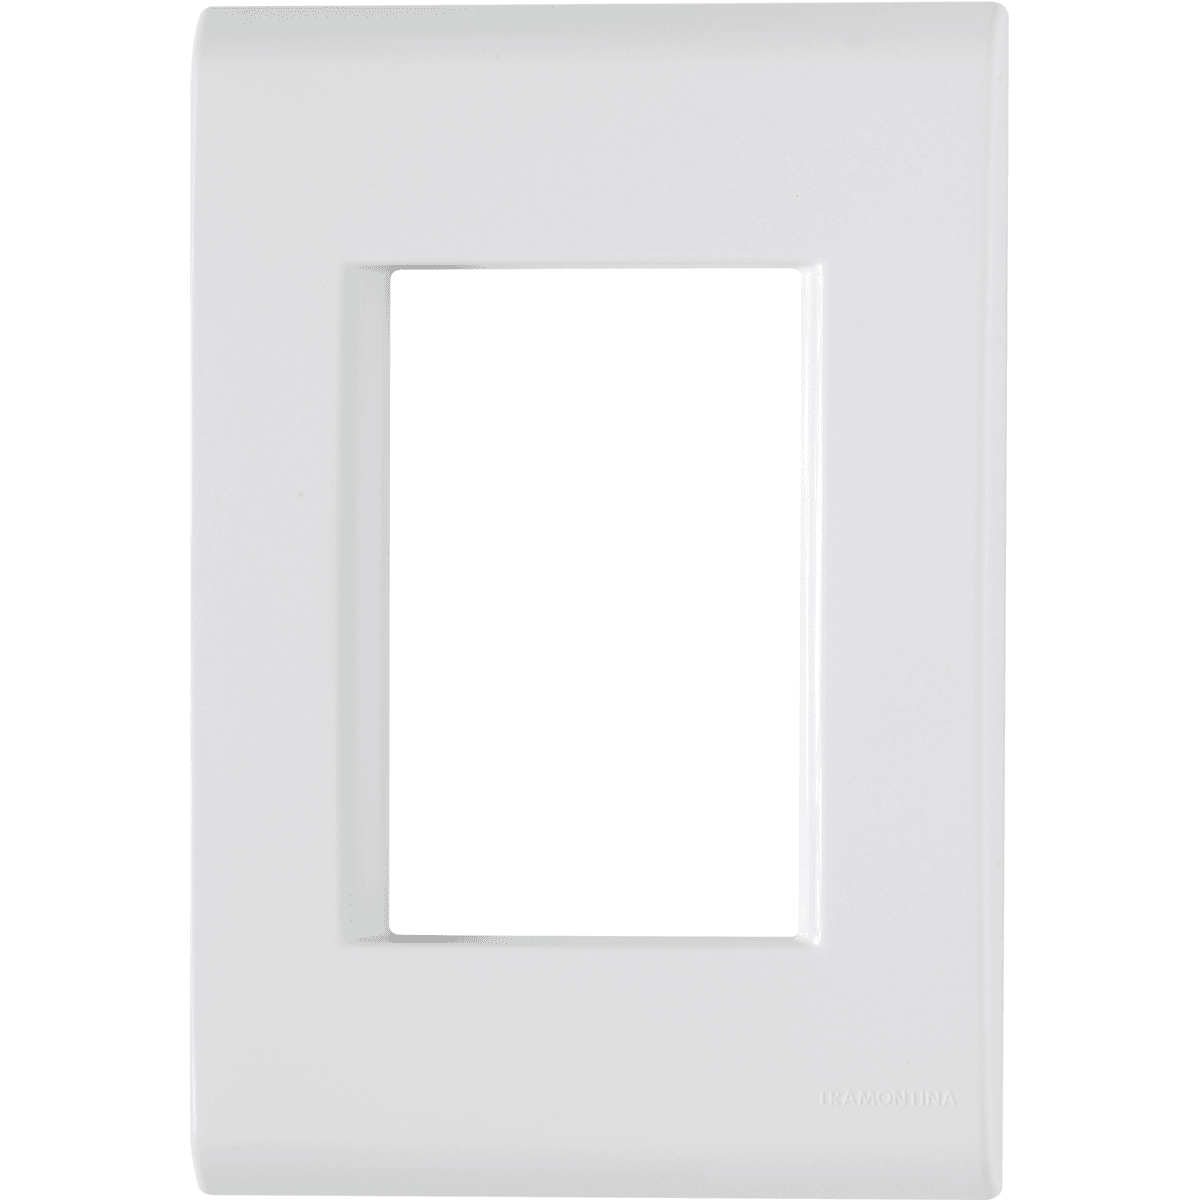 Placa 4x2 com 3 Postos Branco LIZ - Tramontina